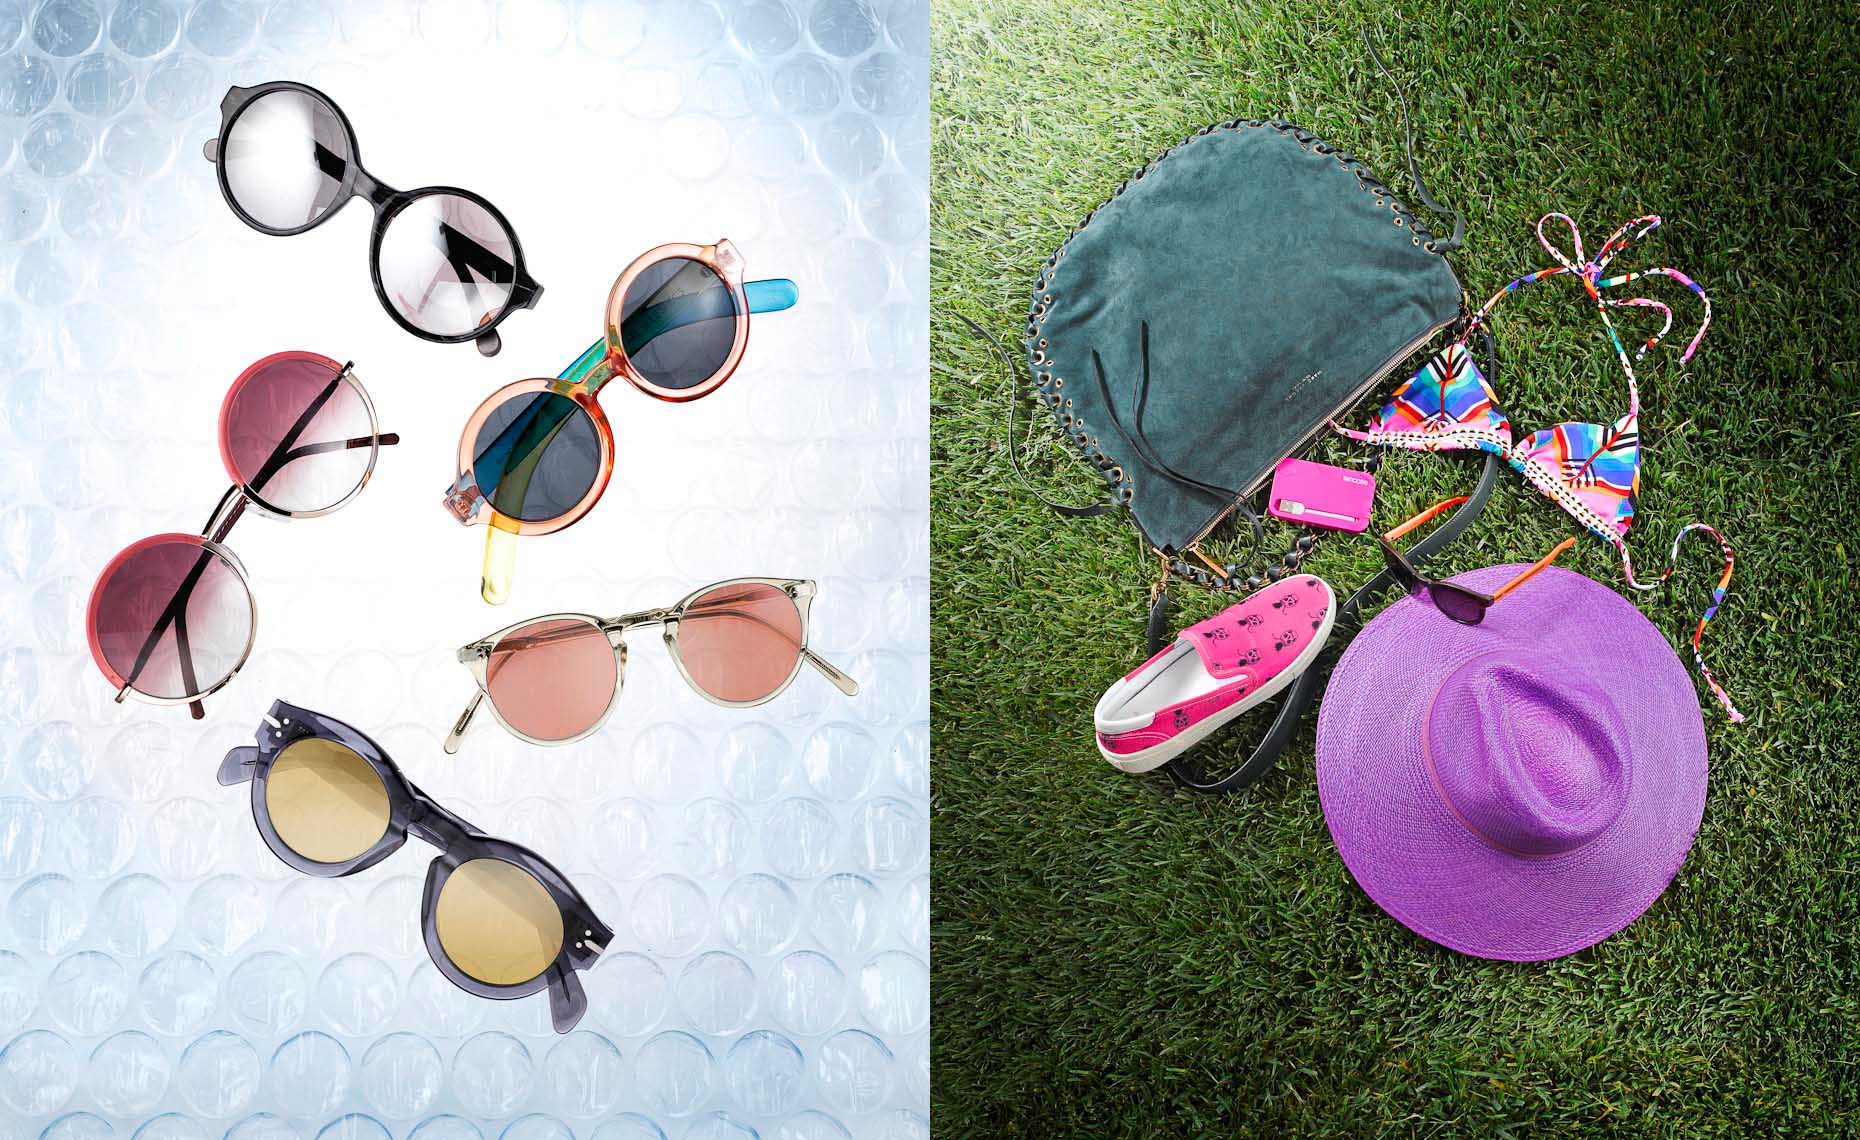 Accessories Still Life, Sunglasses on bubble wrap